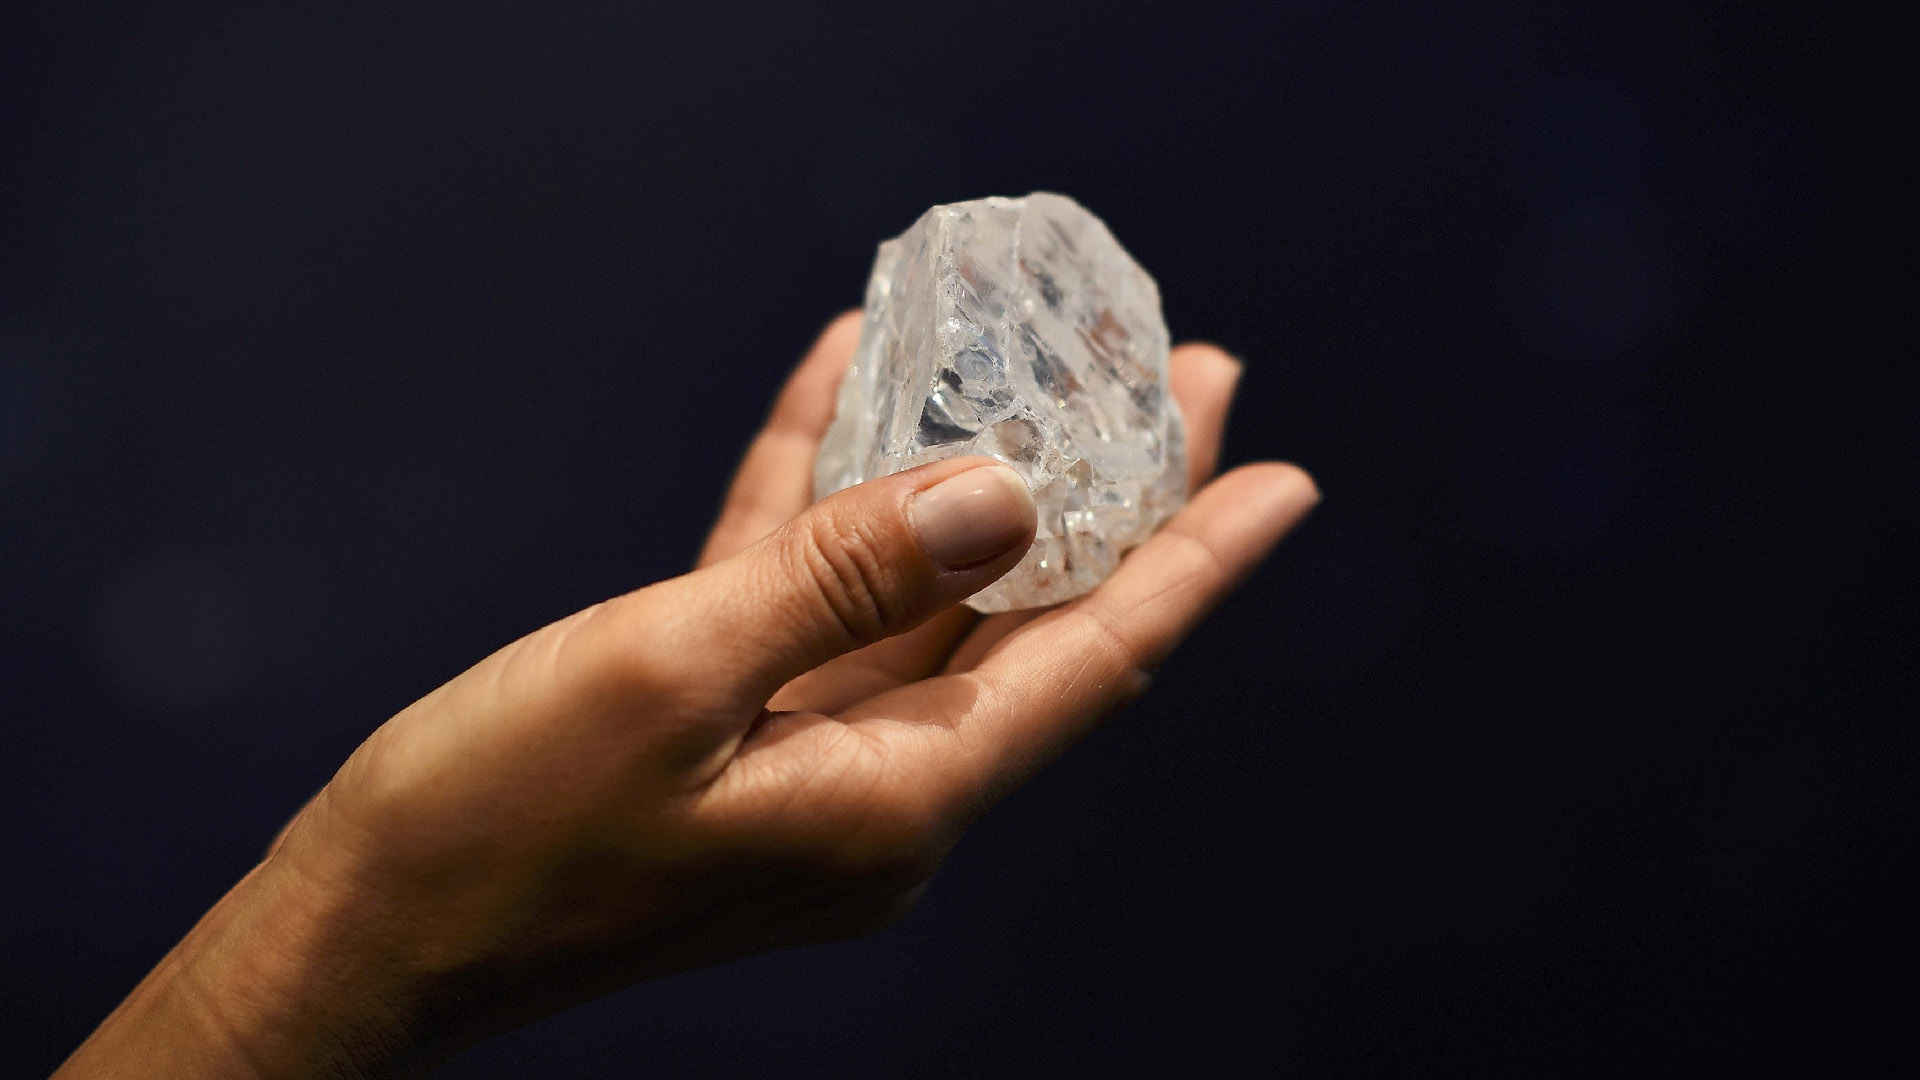 El diamante fue descubierto en noviembre de 2015